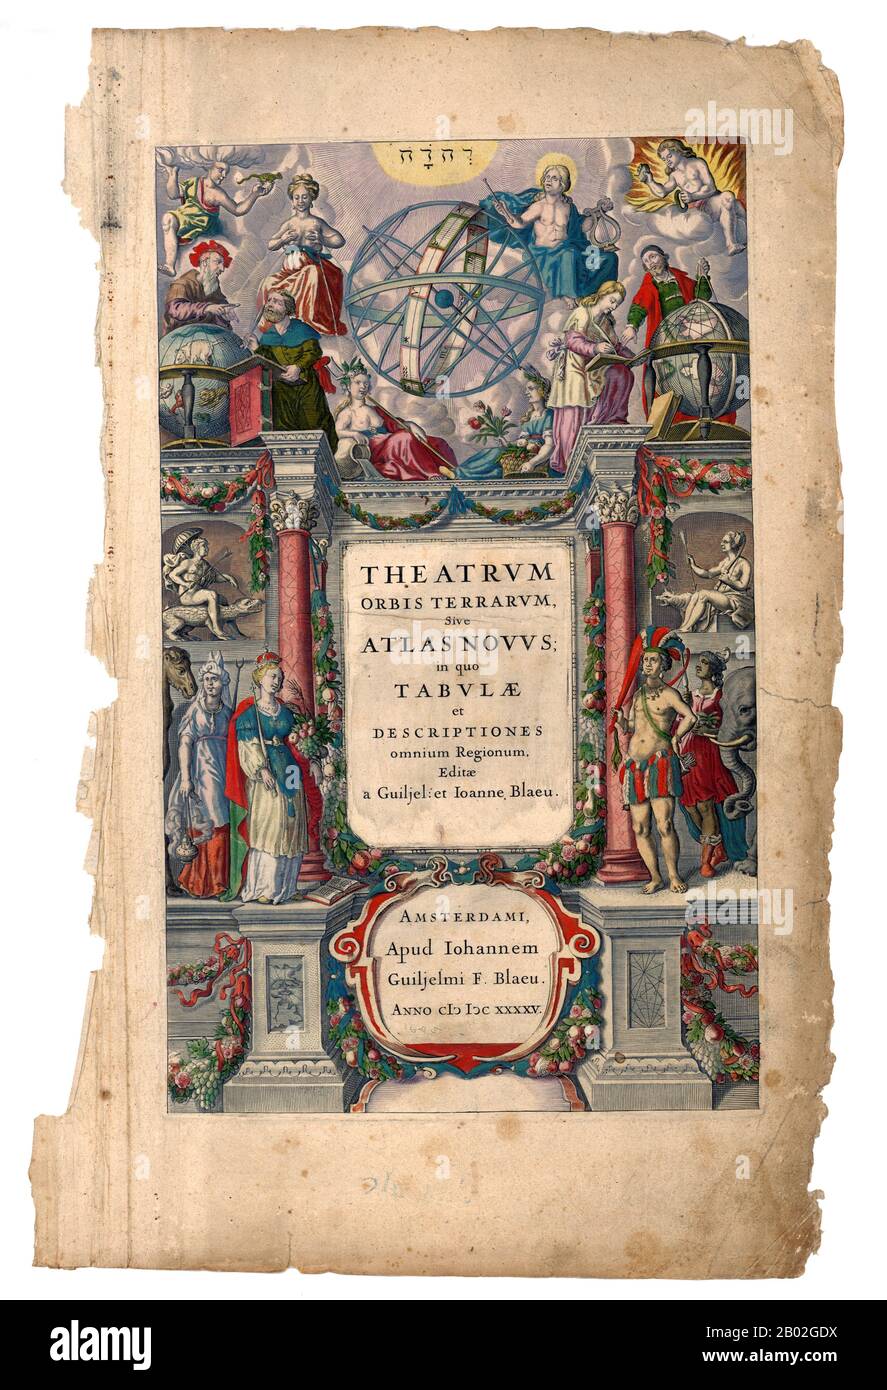 L'Atlas Maior est la version finale de l'atlas de Joan Blaeu, publié à Amsterdam entre 1662 et 1672, en latin (11 volumes), en français (12 volumes), en néerlandais (9 volumes), en allemand (10 volumes) et en espagnol (10 volumes), contenant 594 cartes et environ 3000 pages de texte. C'était le livre le plus grand et le plus cher publié au XVIIe siècle. Plus tôt, des versions beaucoup plus petites, intitulées Theatrum Orbis Terrarum, sive, Atlas Novus, ont été publiées à partir de 1634. Banque D'Images